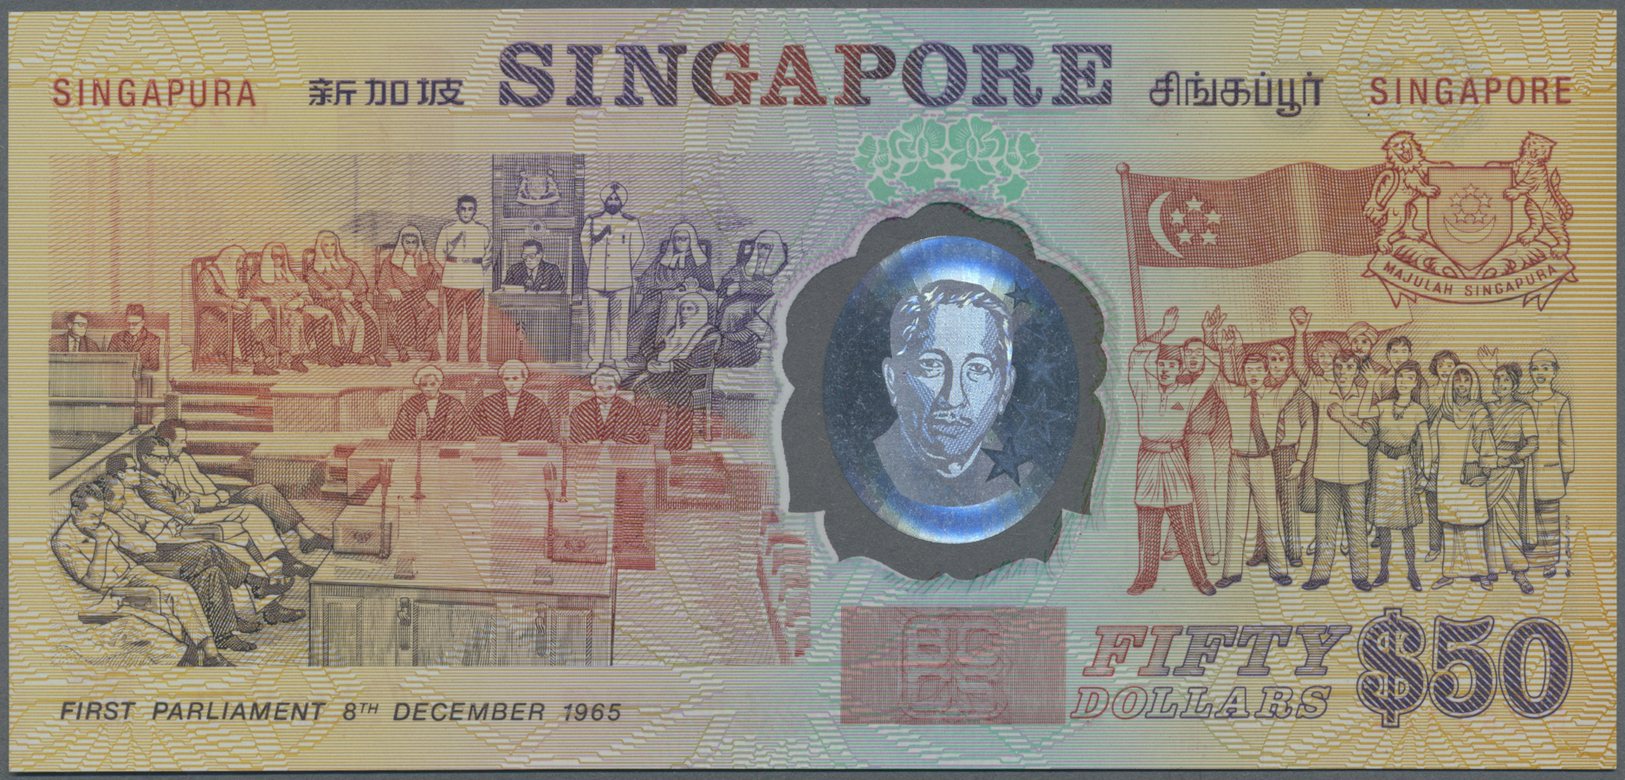 02903 Singapore / Singapur: 50 Dollars ND P. 30, Poymer Commemorative Note, Condition: UNC. - Singapour